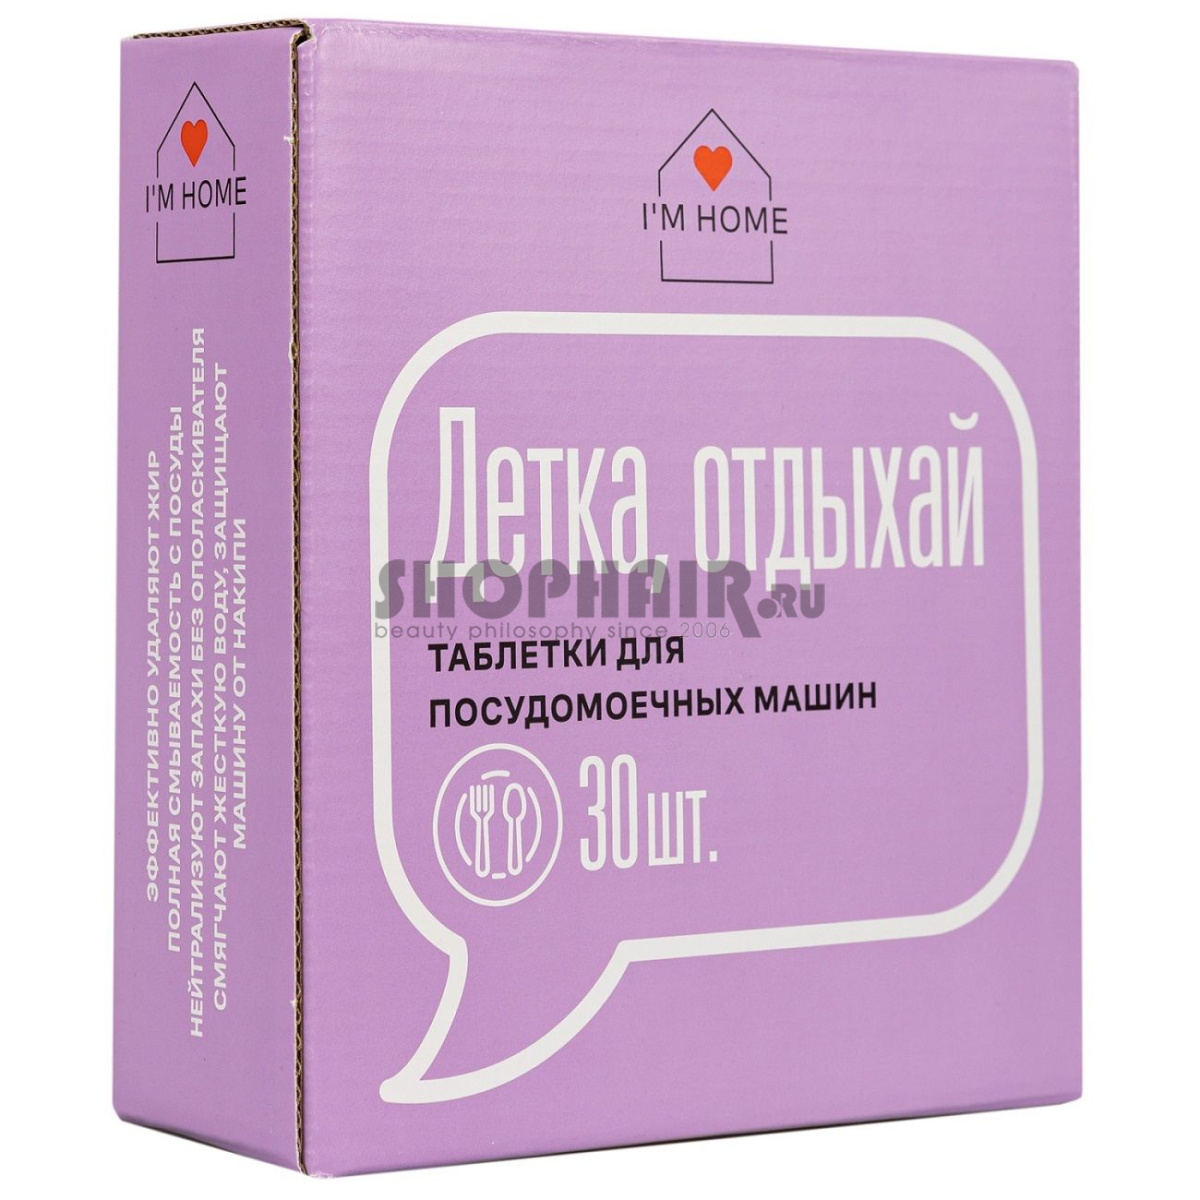 Таблетки для посудомоечных машин «Детка, отдыхай», 30 шт I'm Home (Россия) купить по цене 469 руб.